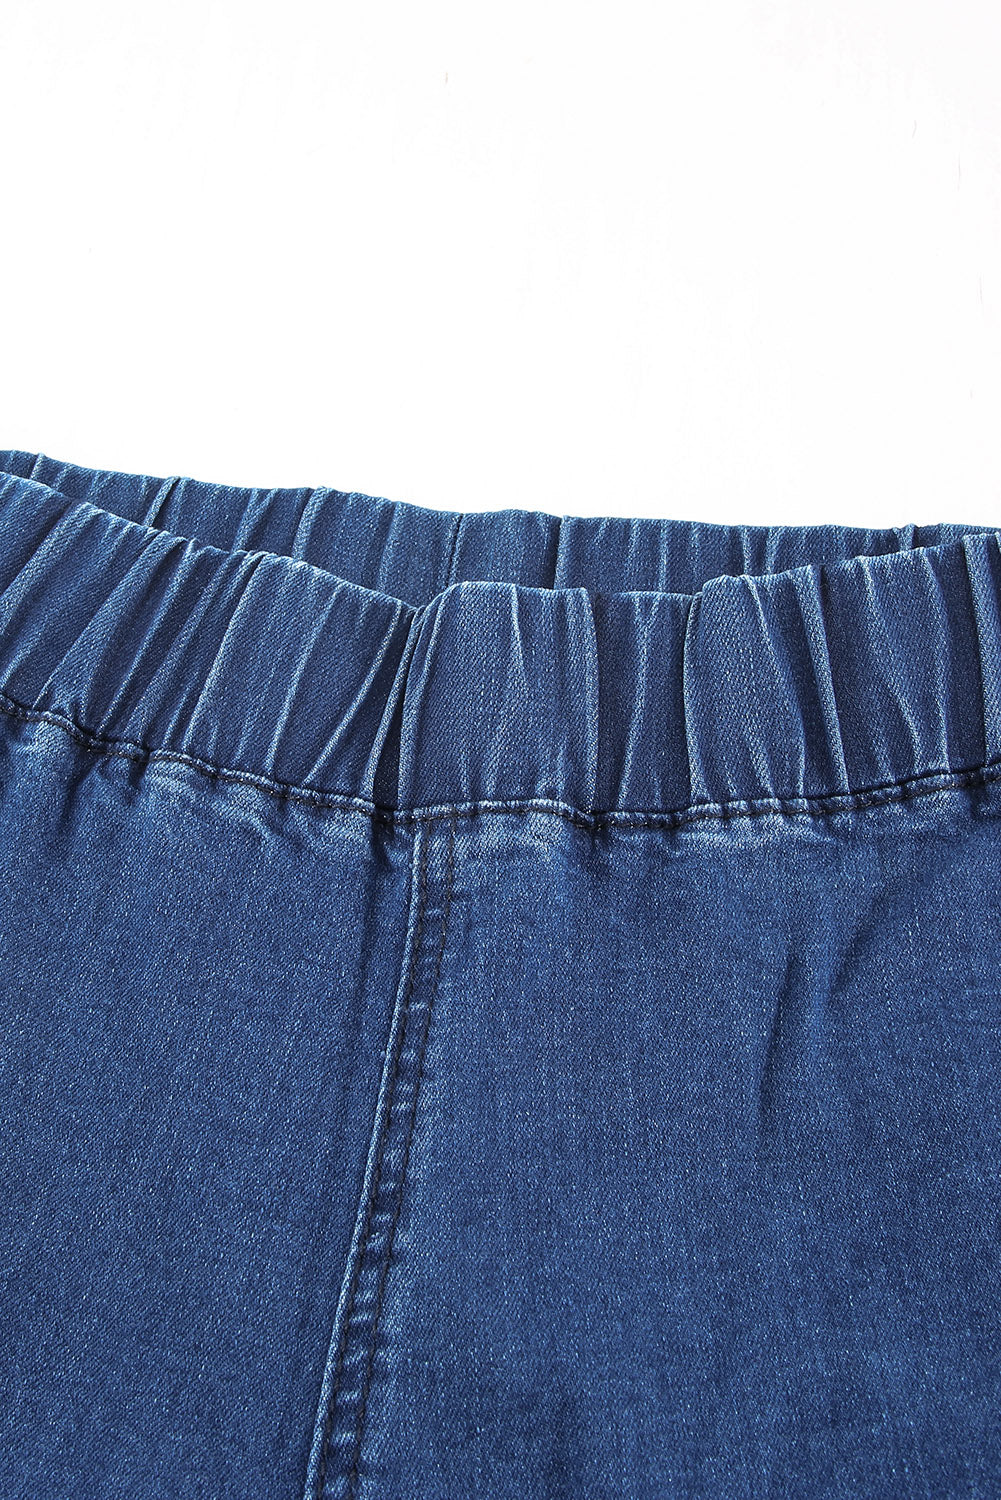 Sky Blue Distressed Bell Bottom Denim Pants Jeans JT's Designer Fashion